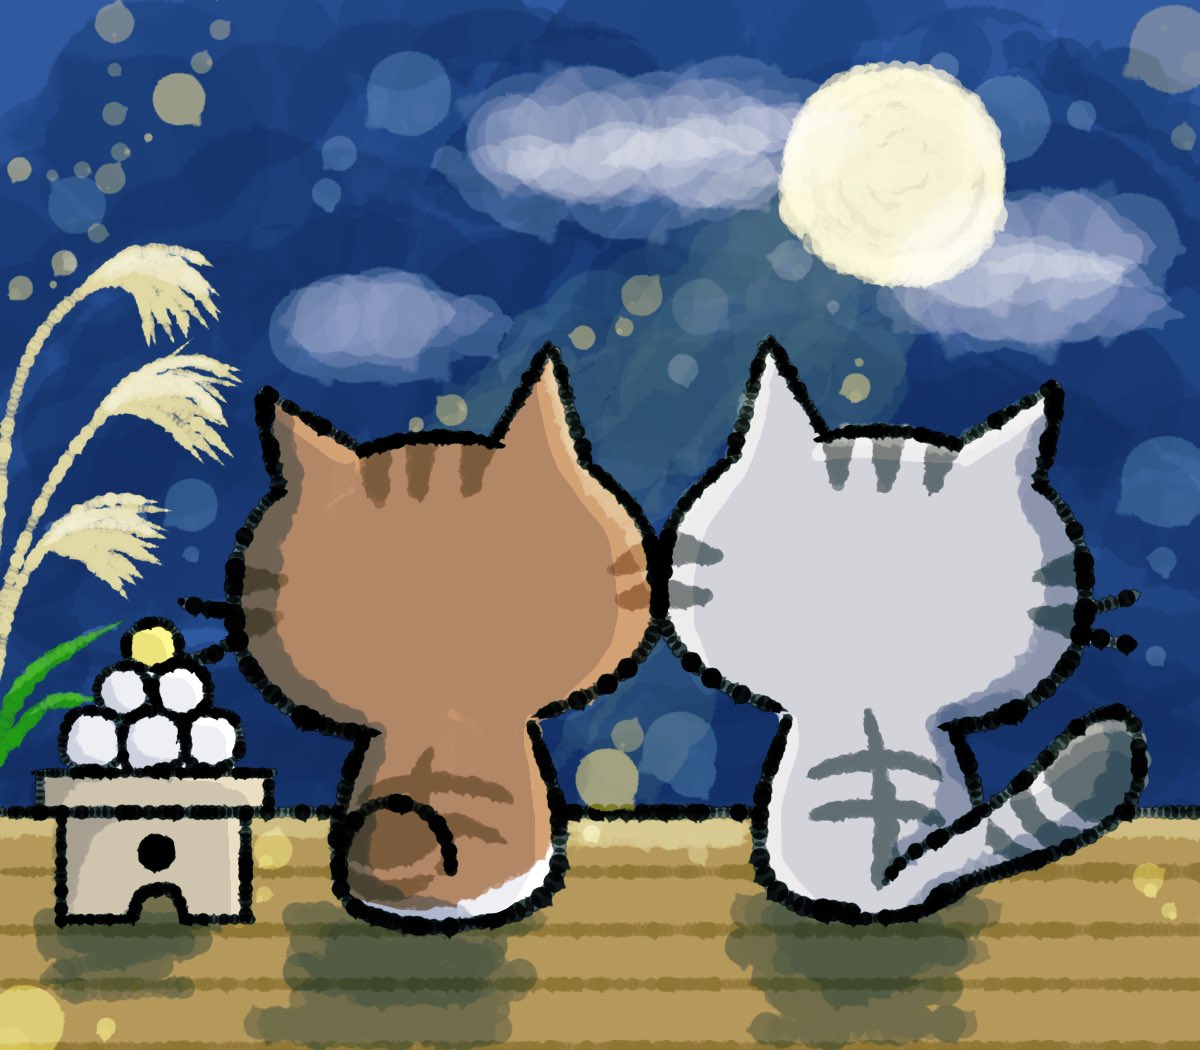 今日は十五夜 でも残念ながら天気悪くて月が見えない 今日は何の日 十五夜 満月 ねこ 猫 ネコ ねこイラスト イラスト ツイレポ